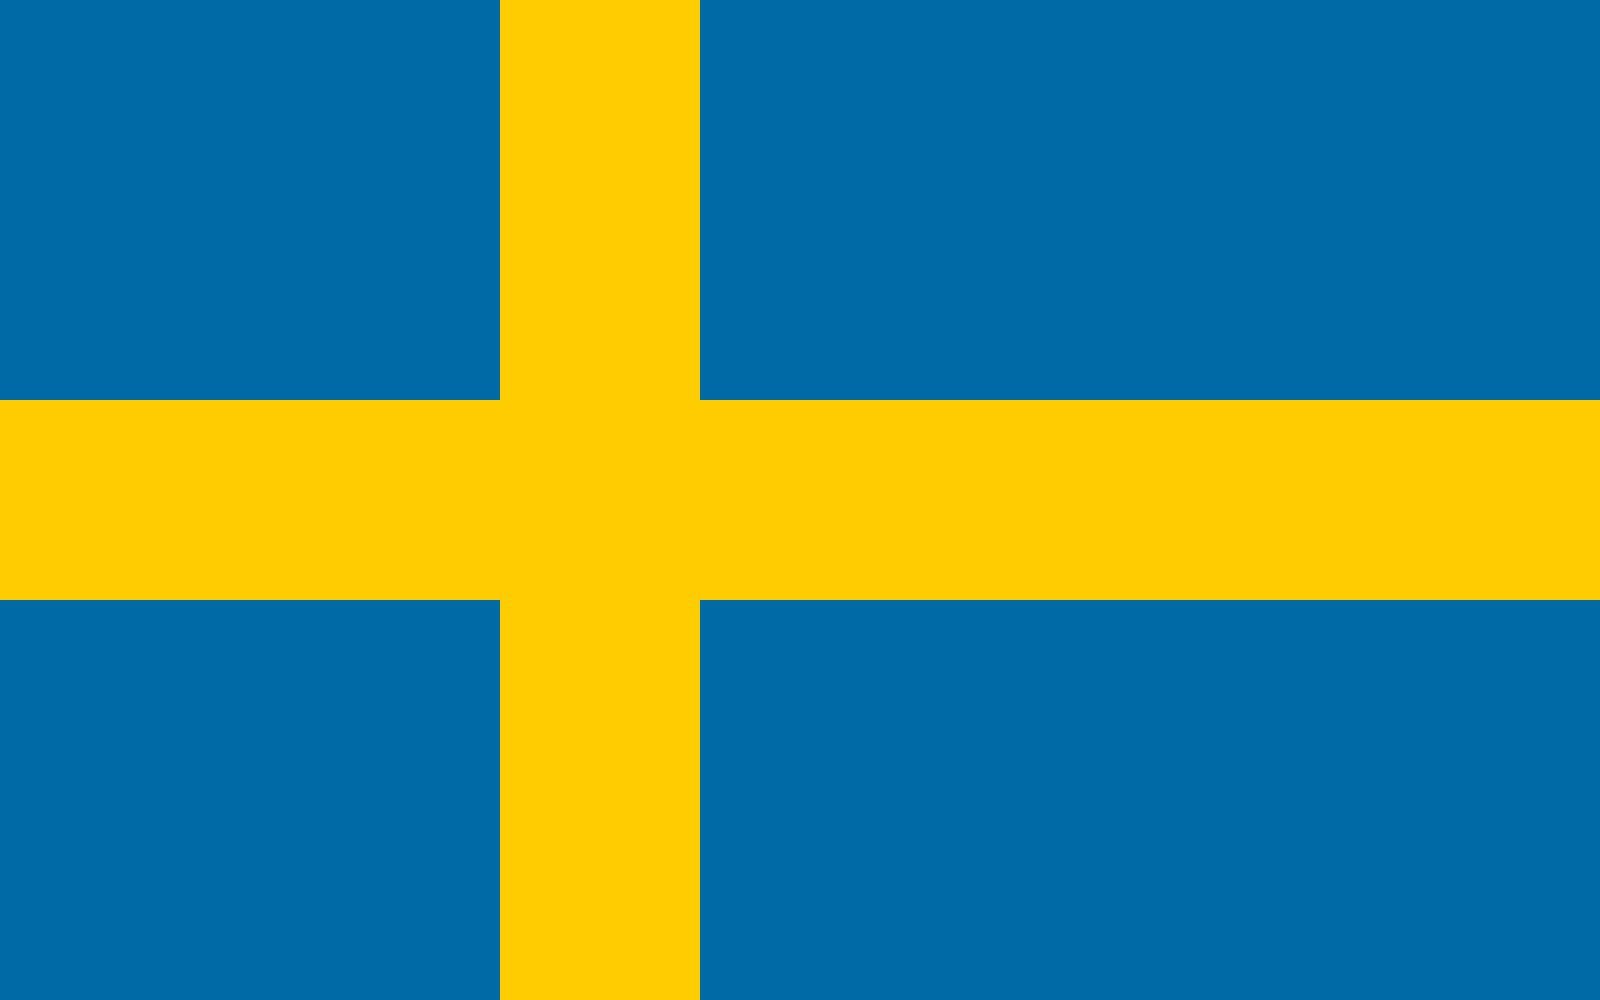 szwecja-flaga